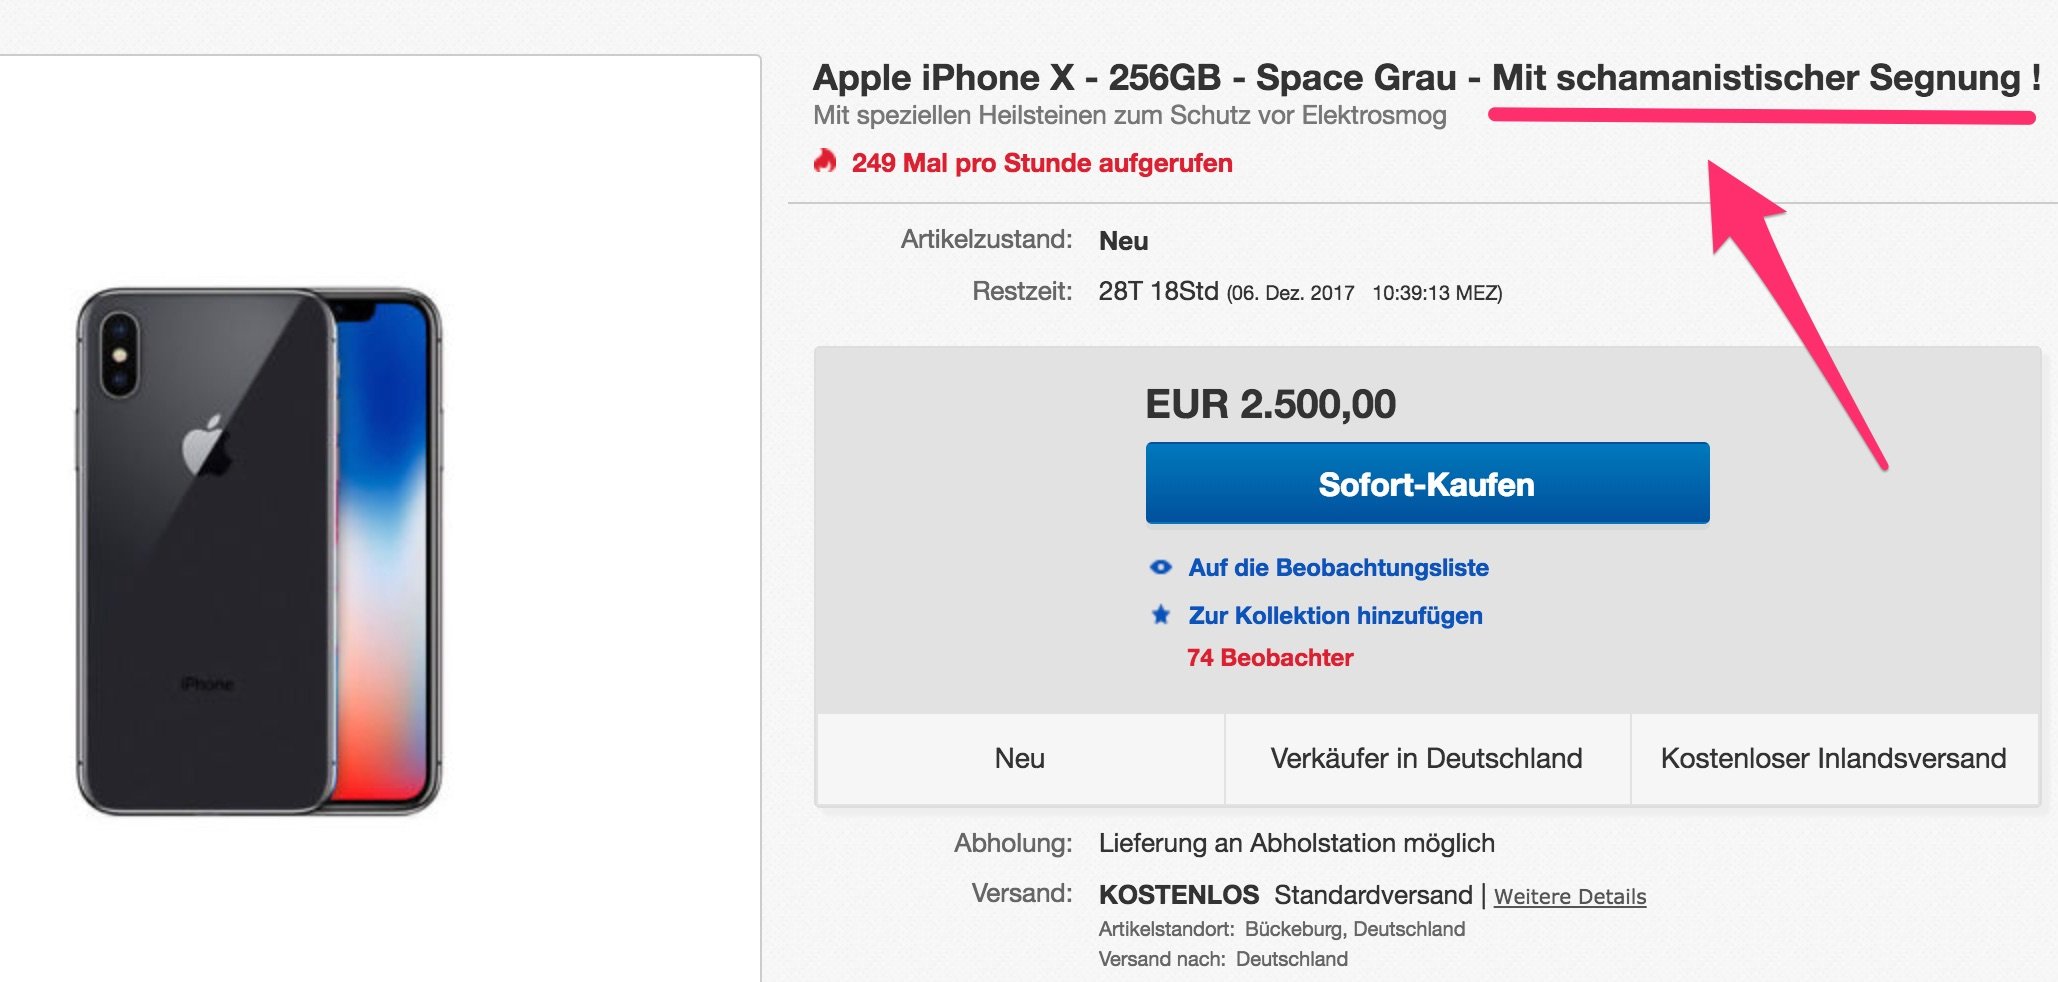 ebay: iPhone X mit Heilsteinen zum Schutz vor Elektrosmog 8